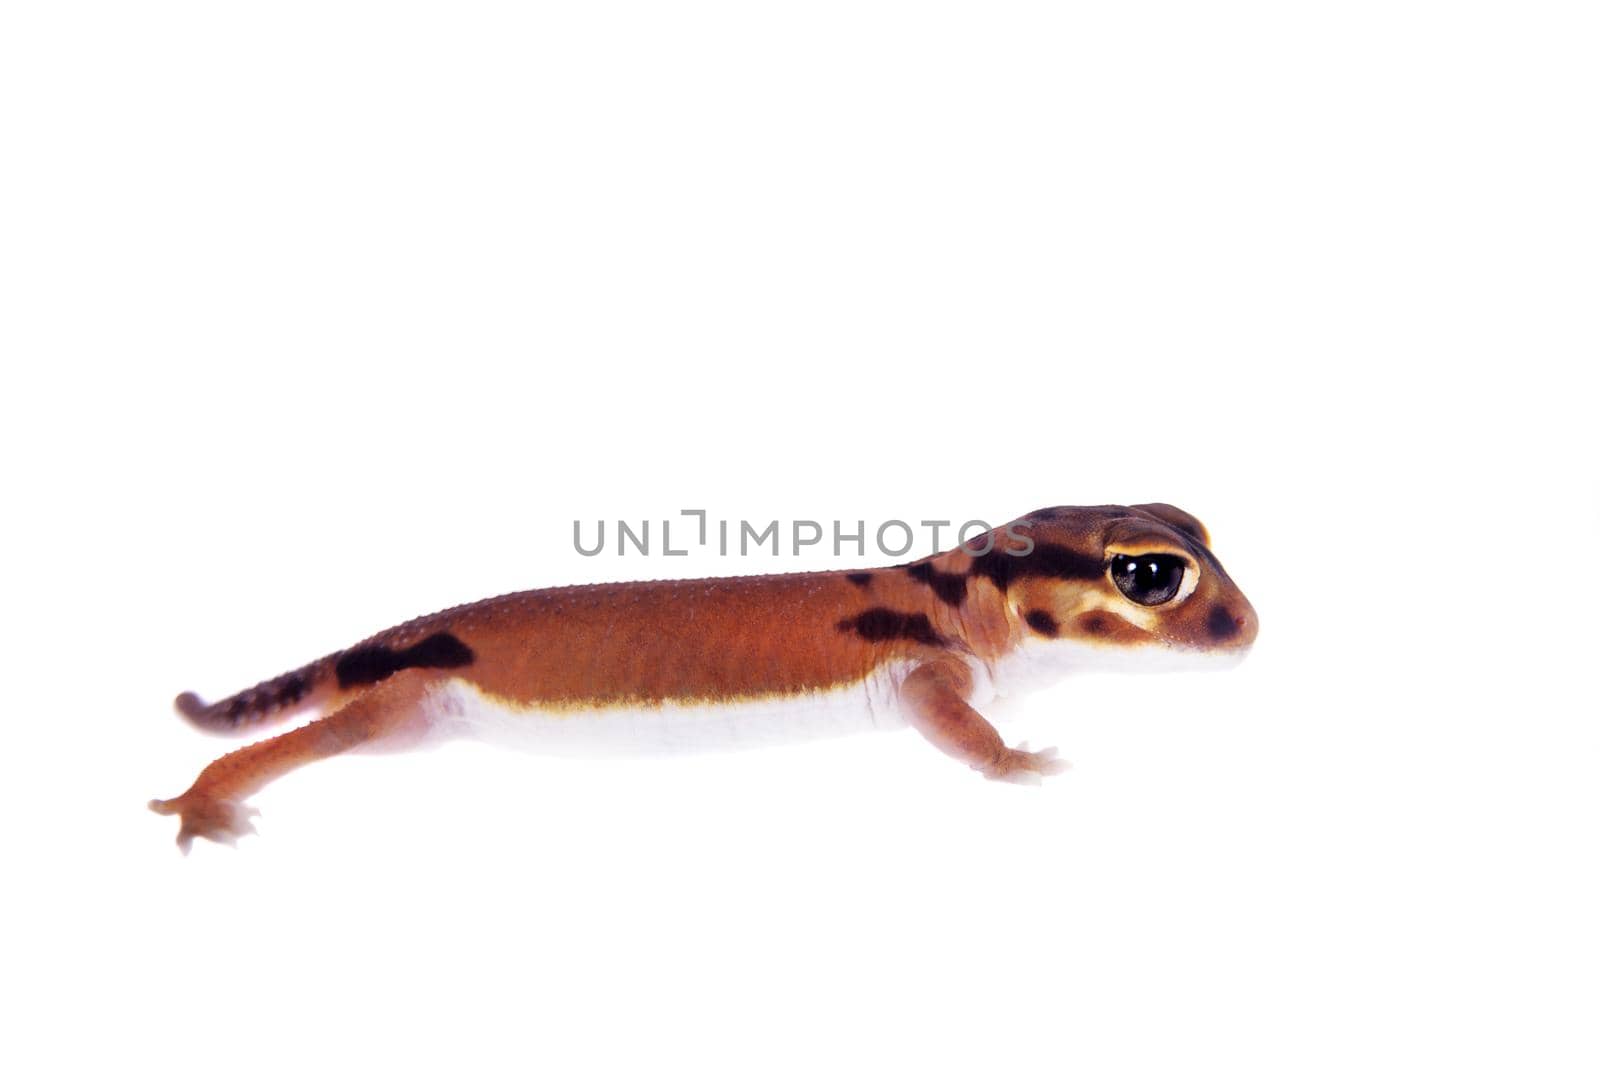 Pale Knob-tailed Gecko, Nephrurus laevissimus, isolated on white background